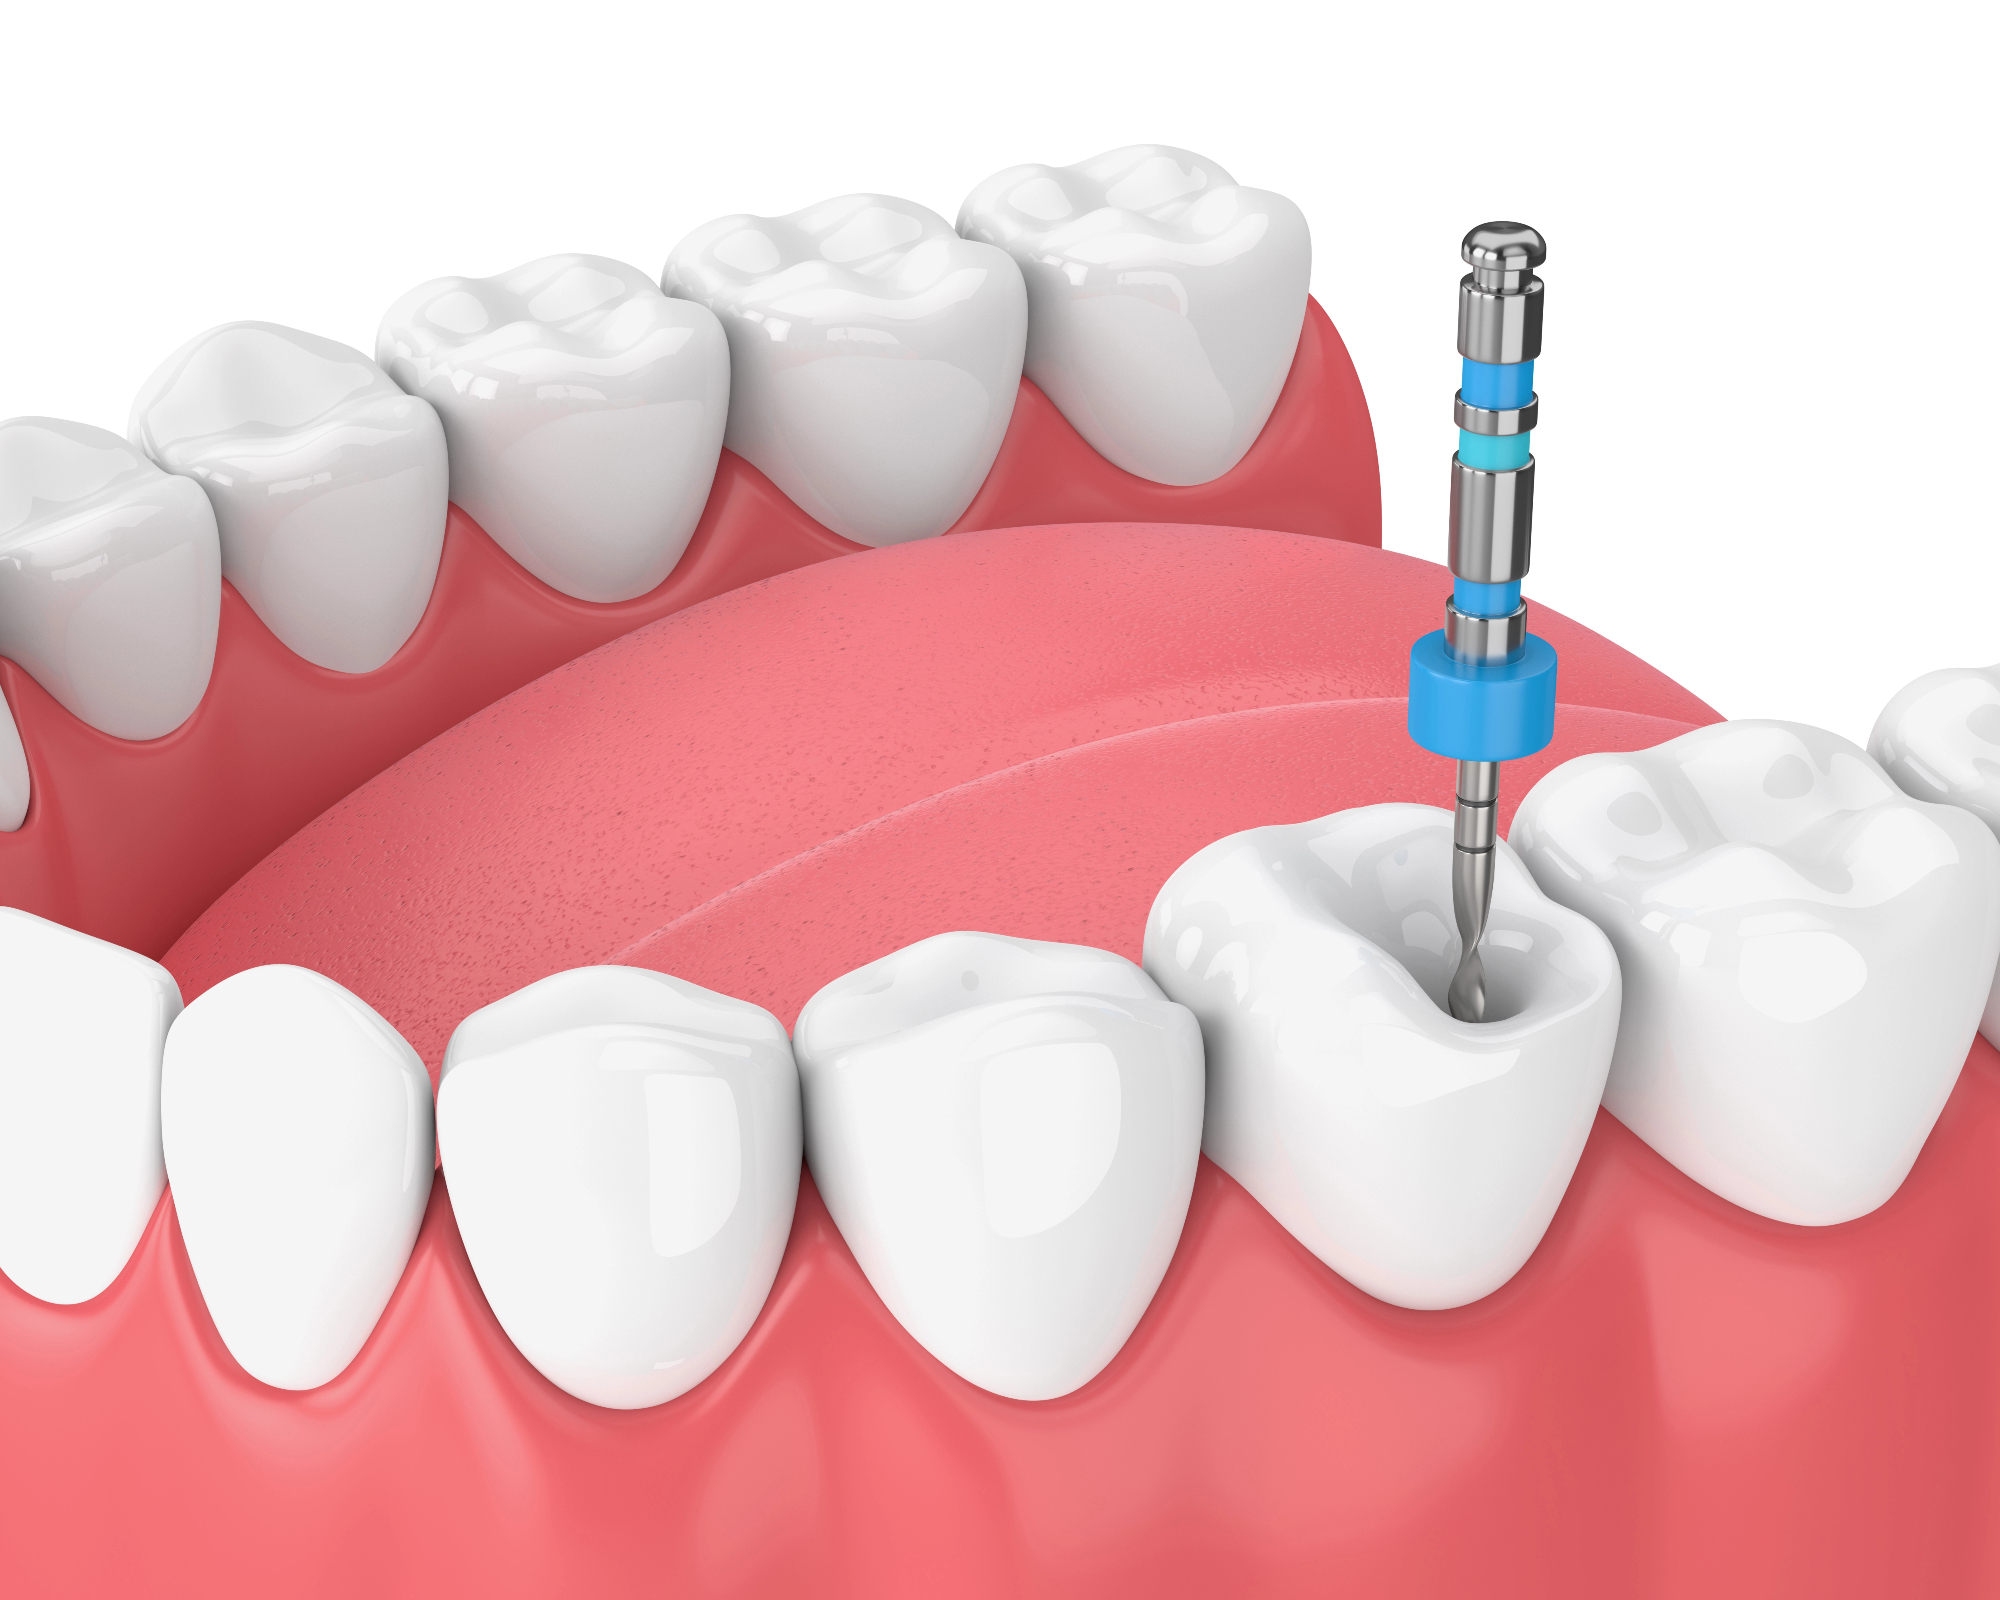 Endodontija je pomembna veja zobozdravstva